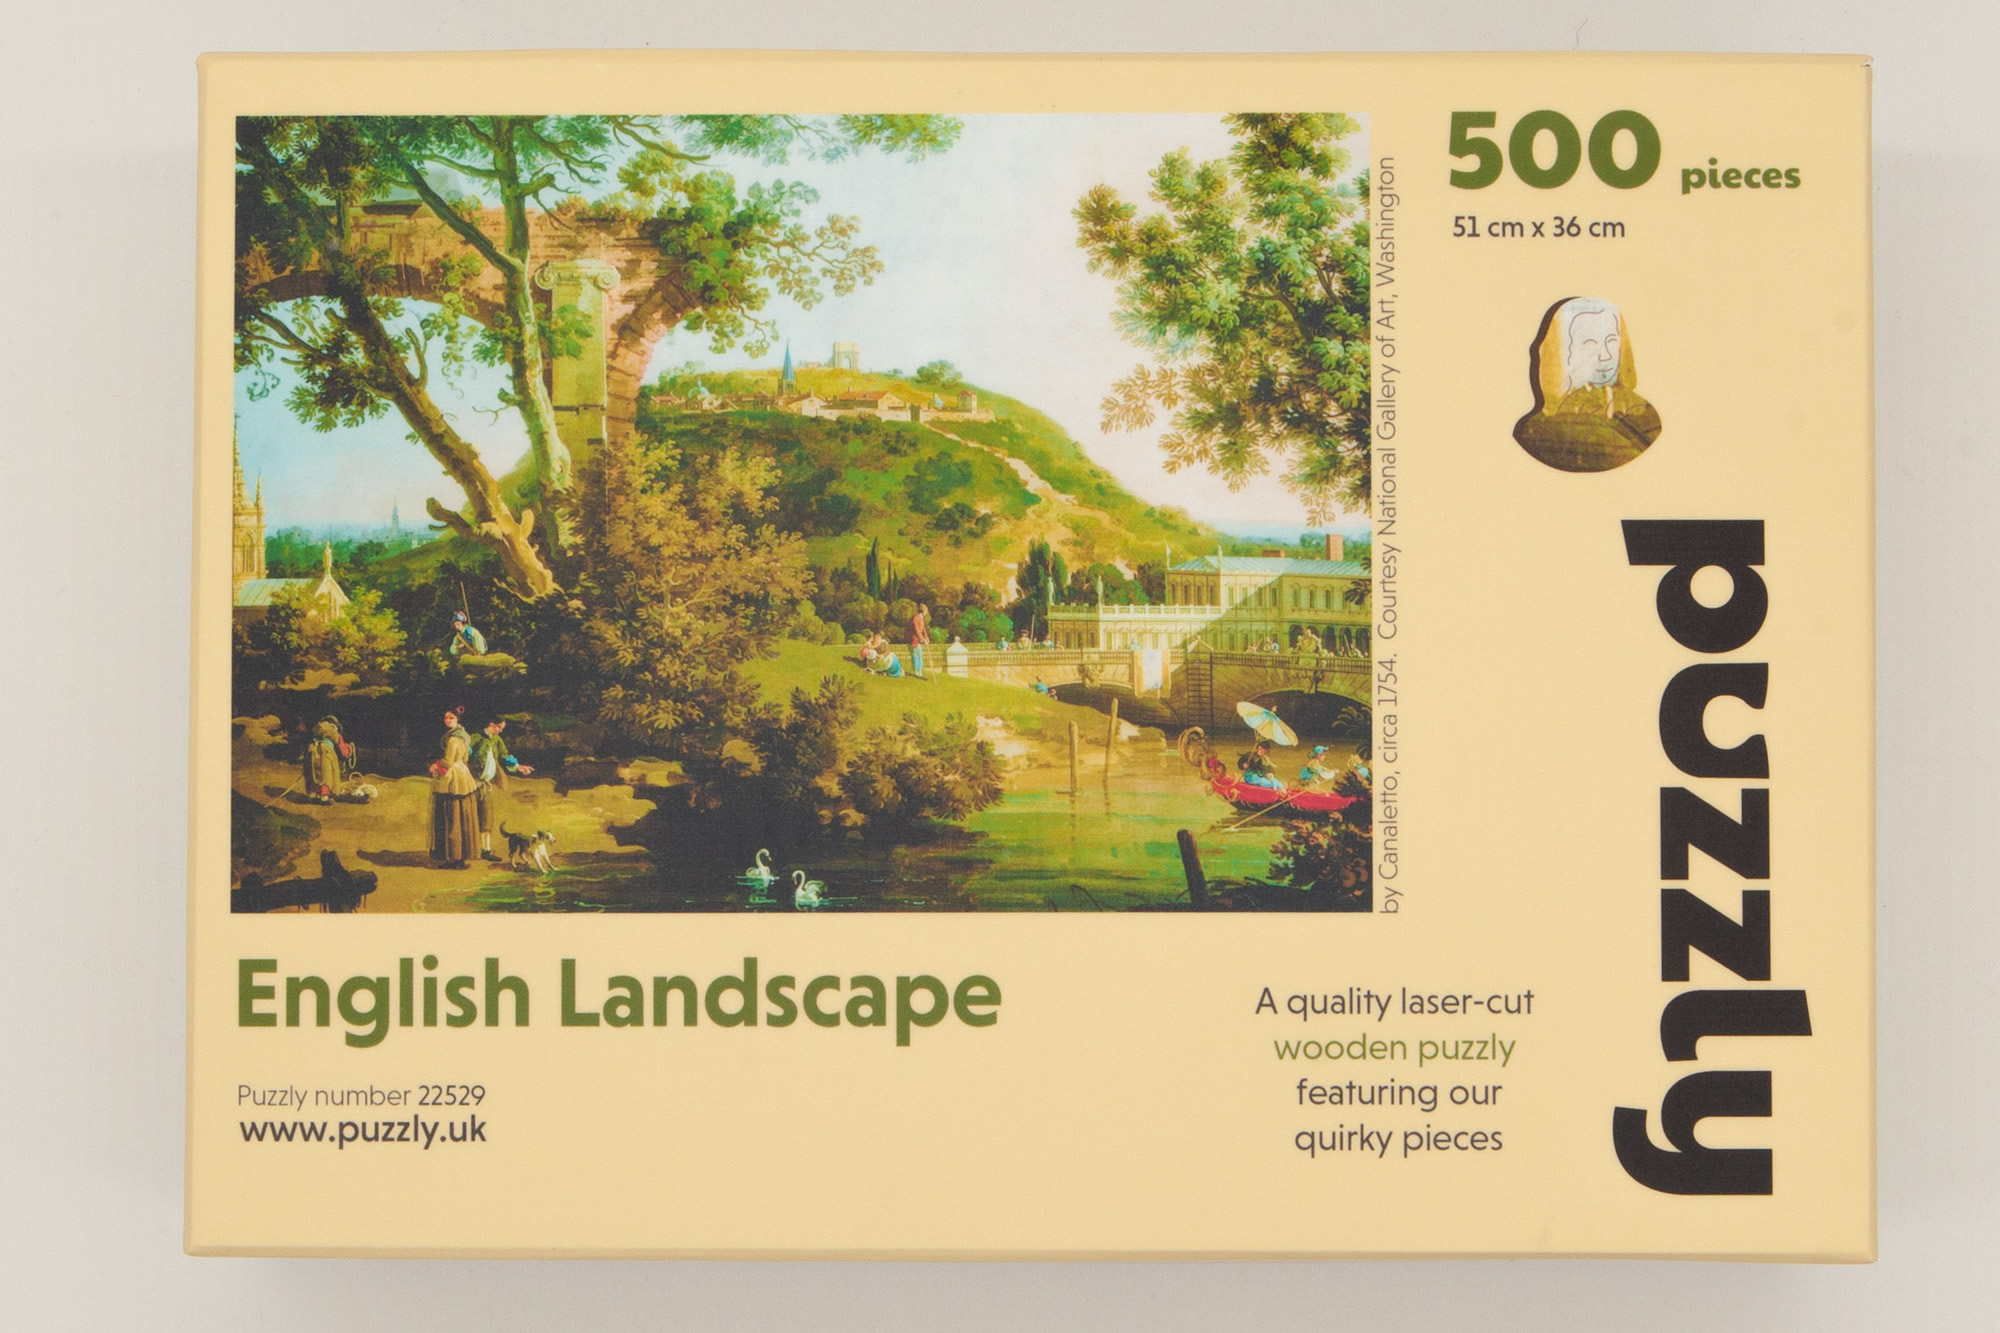 English Landscape 500 piece wooden puzzle